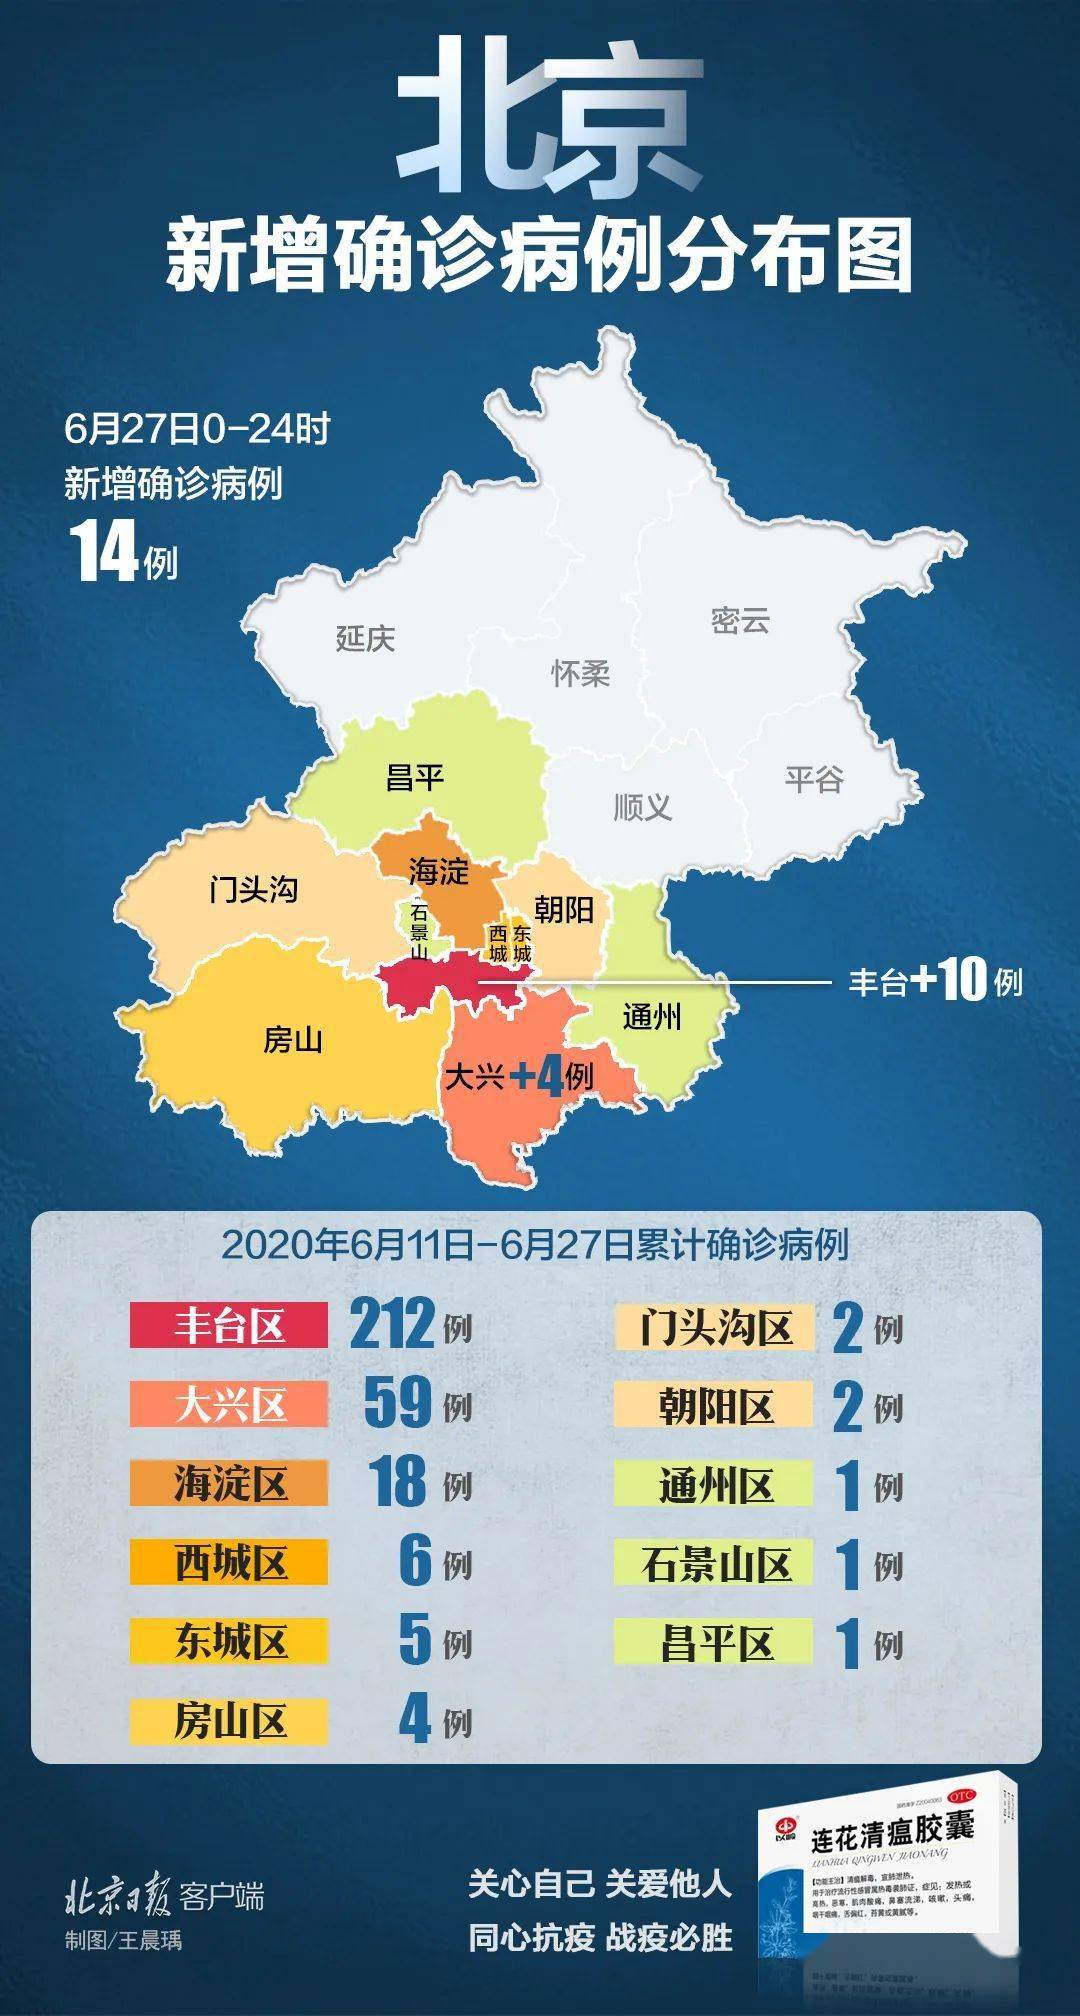 新增14例确诊,北京现有病例超过300